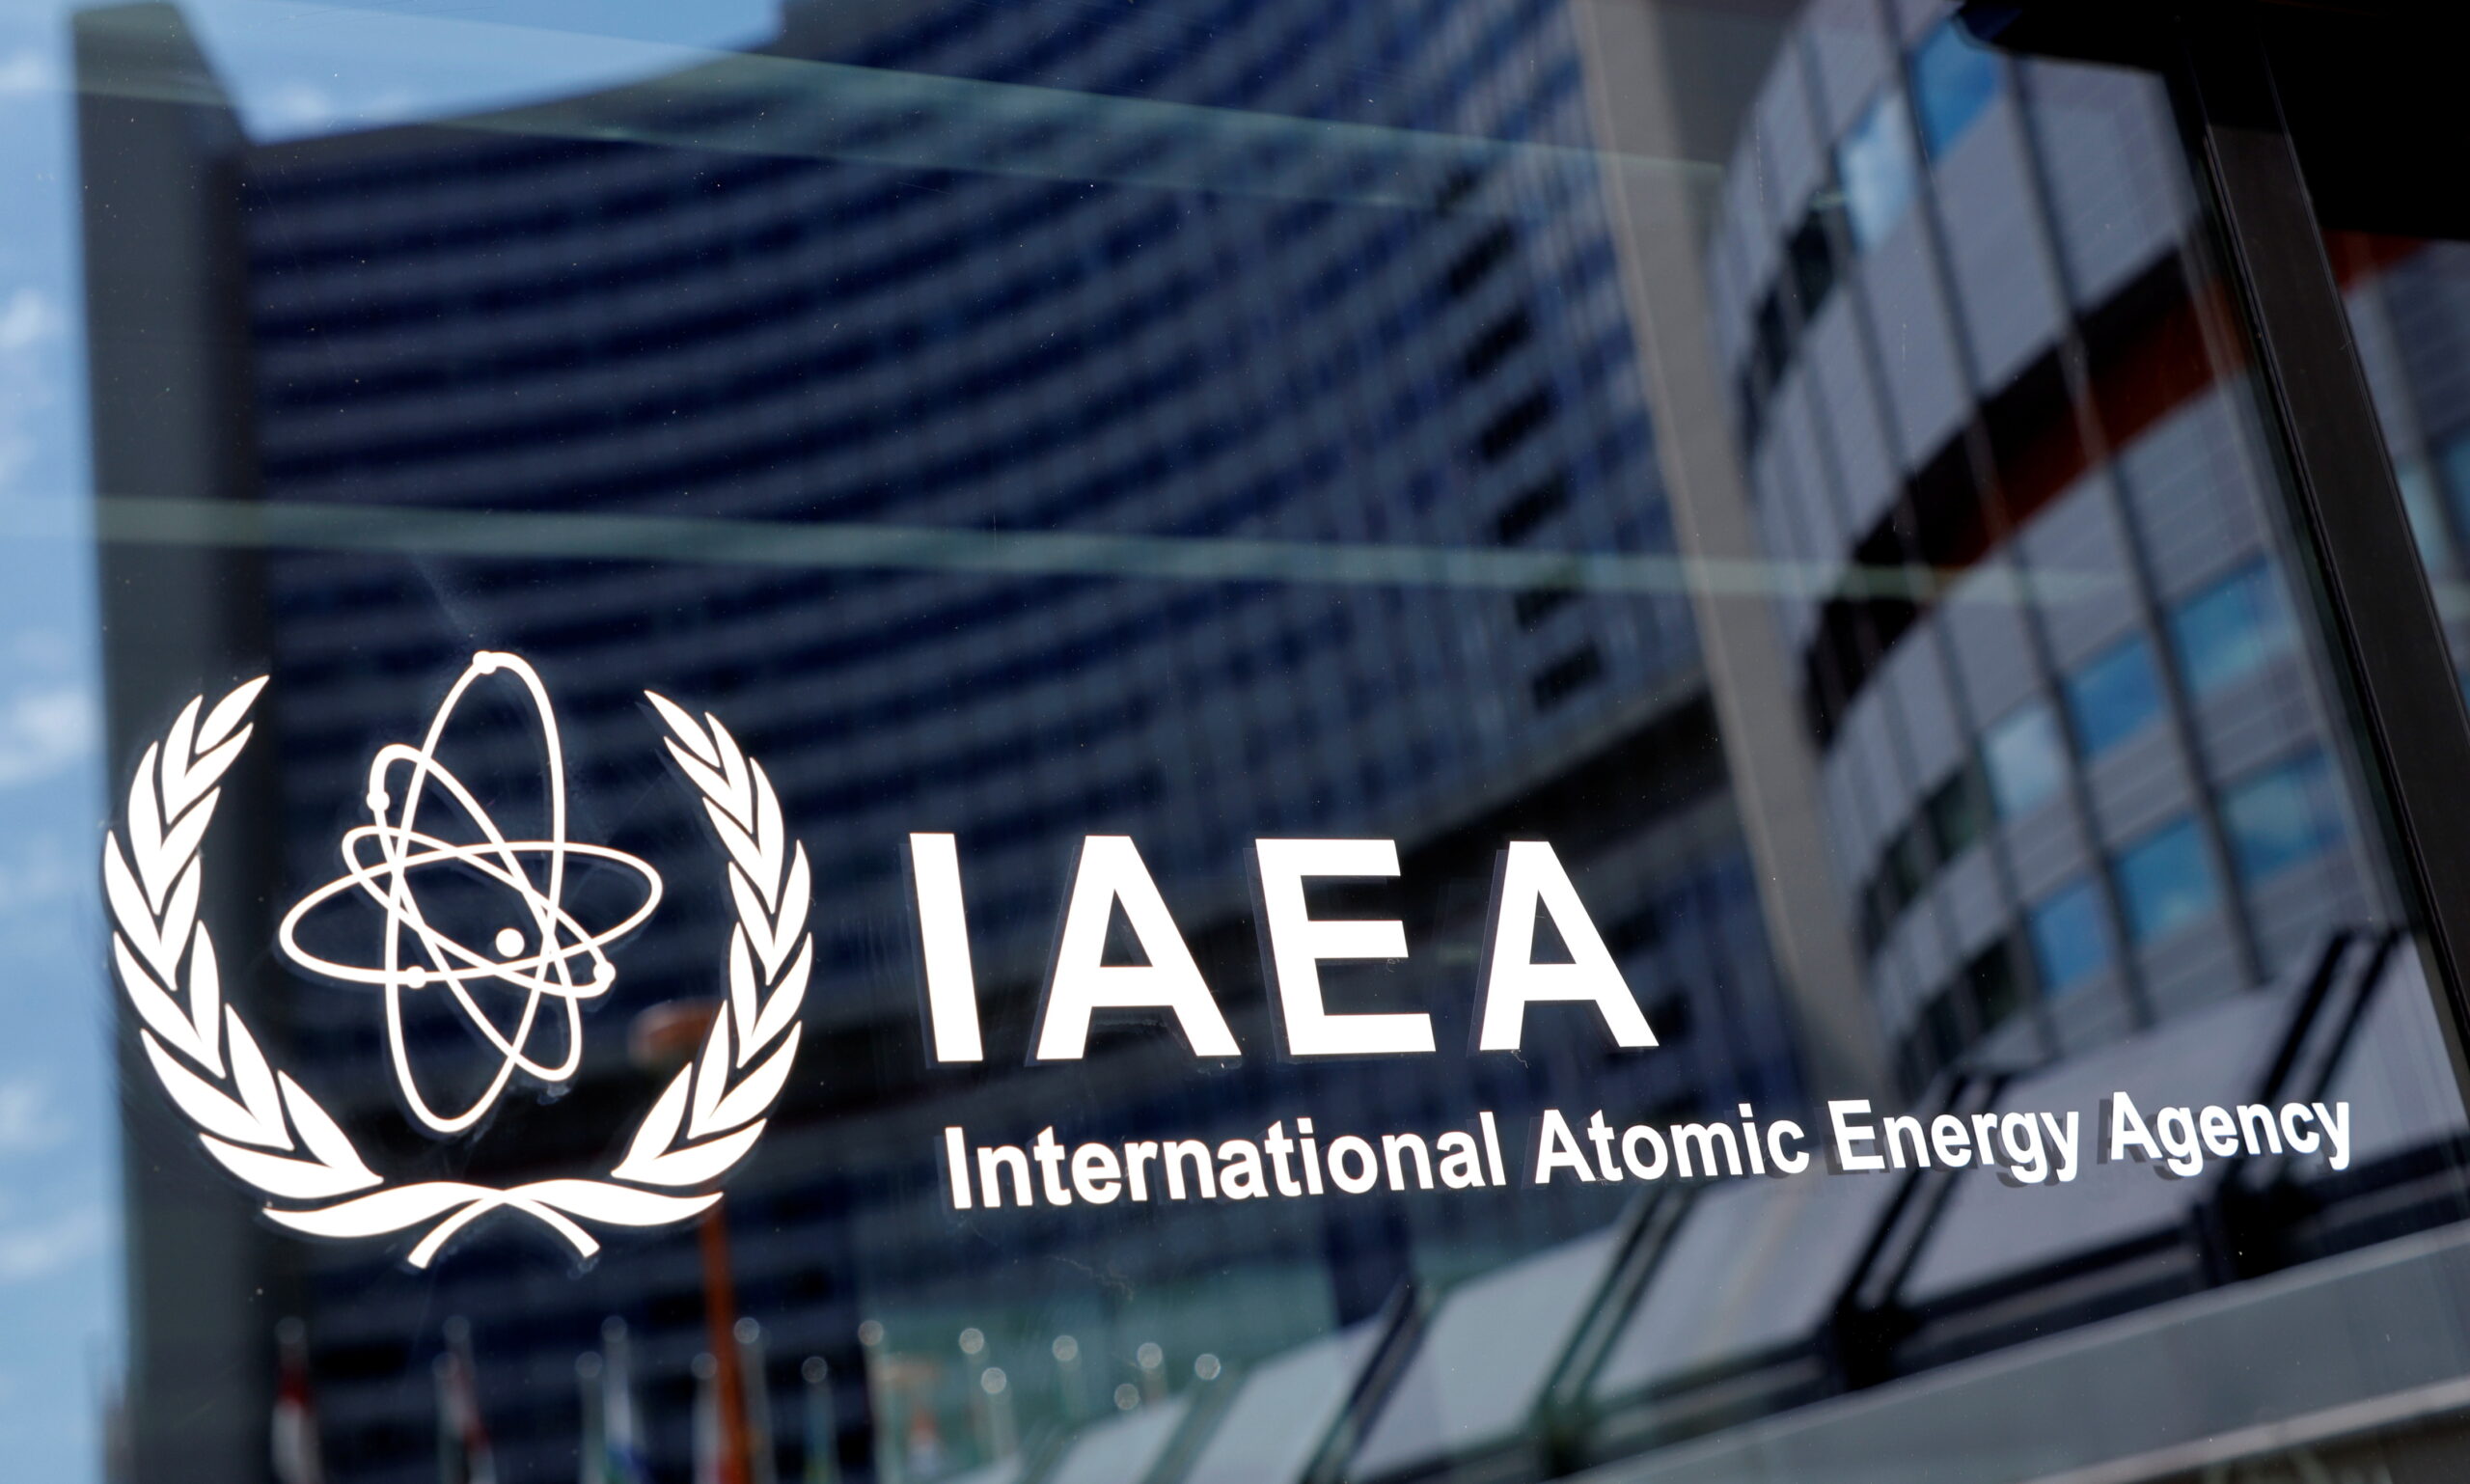 دیده بان اتمی سازمان ملل ارزیابی می کند که ایران ذخایر اورانیوم غنی شده 60 درصد را دو برابر کرده است